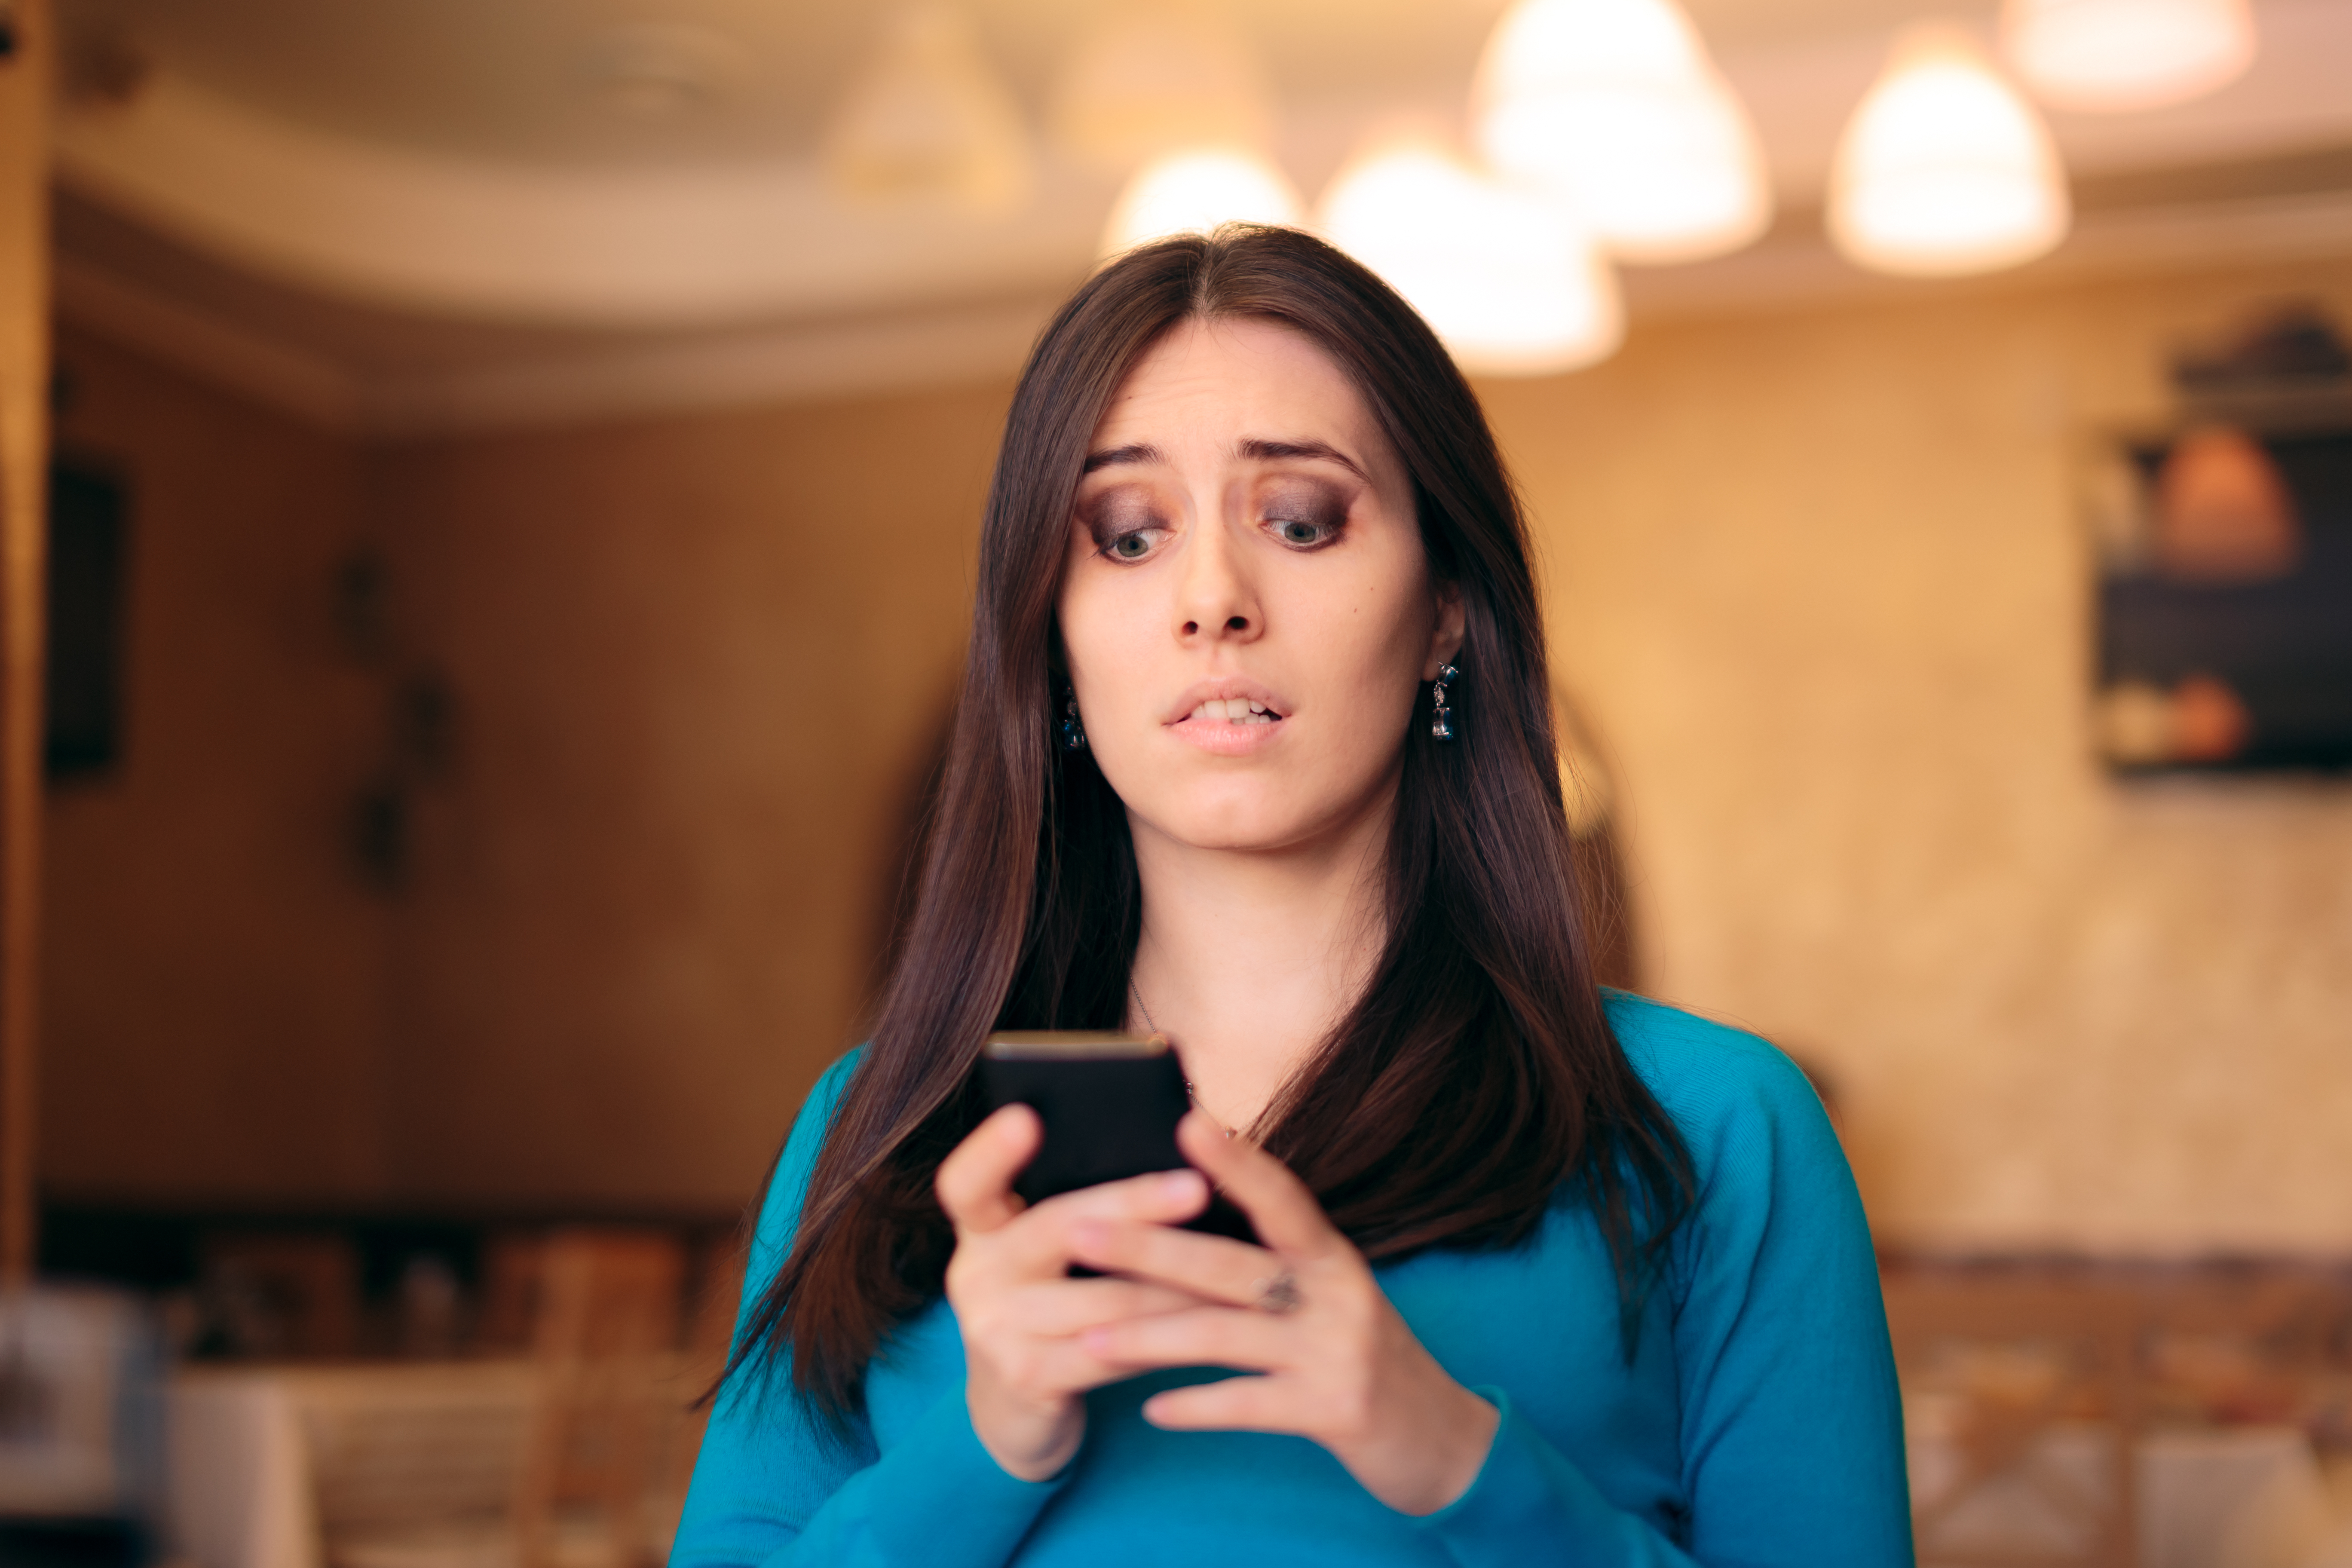 Une femme choquée par son téléphone | Source : Shutterstock